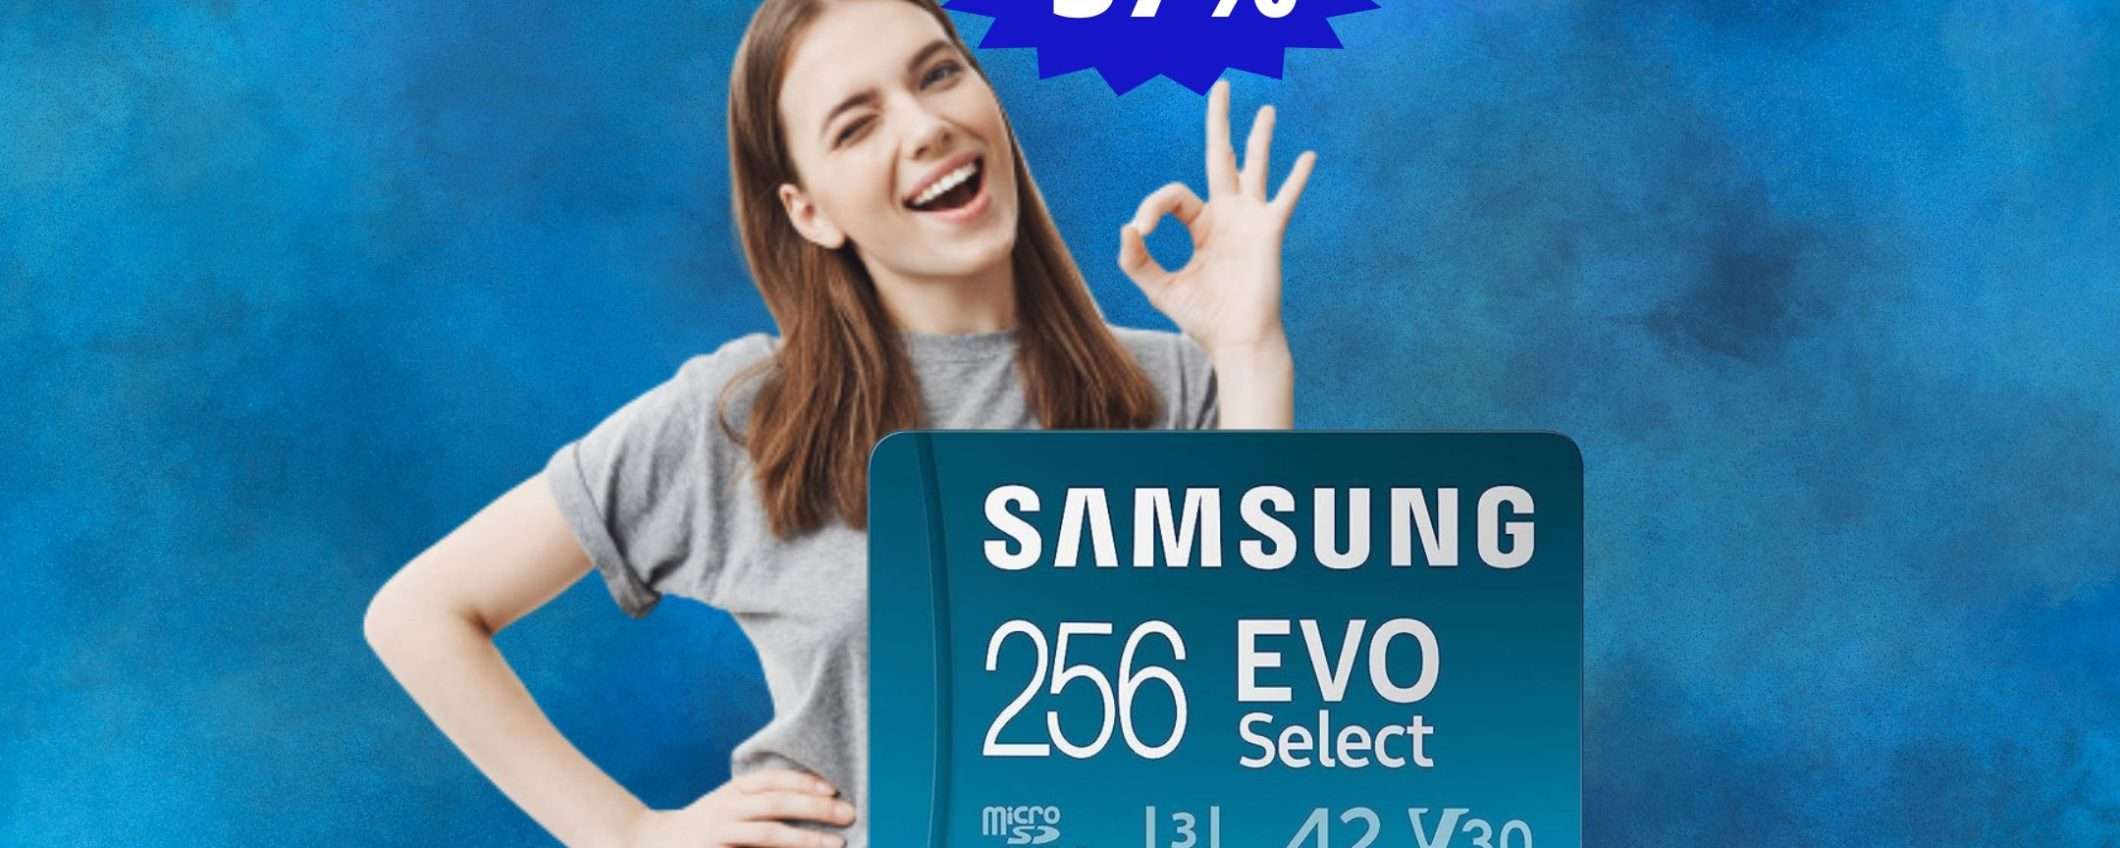 Micro SD Samsung Memorie: un AFFARE a questo prezzo (-37%)